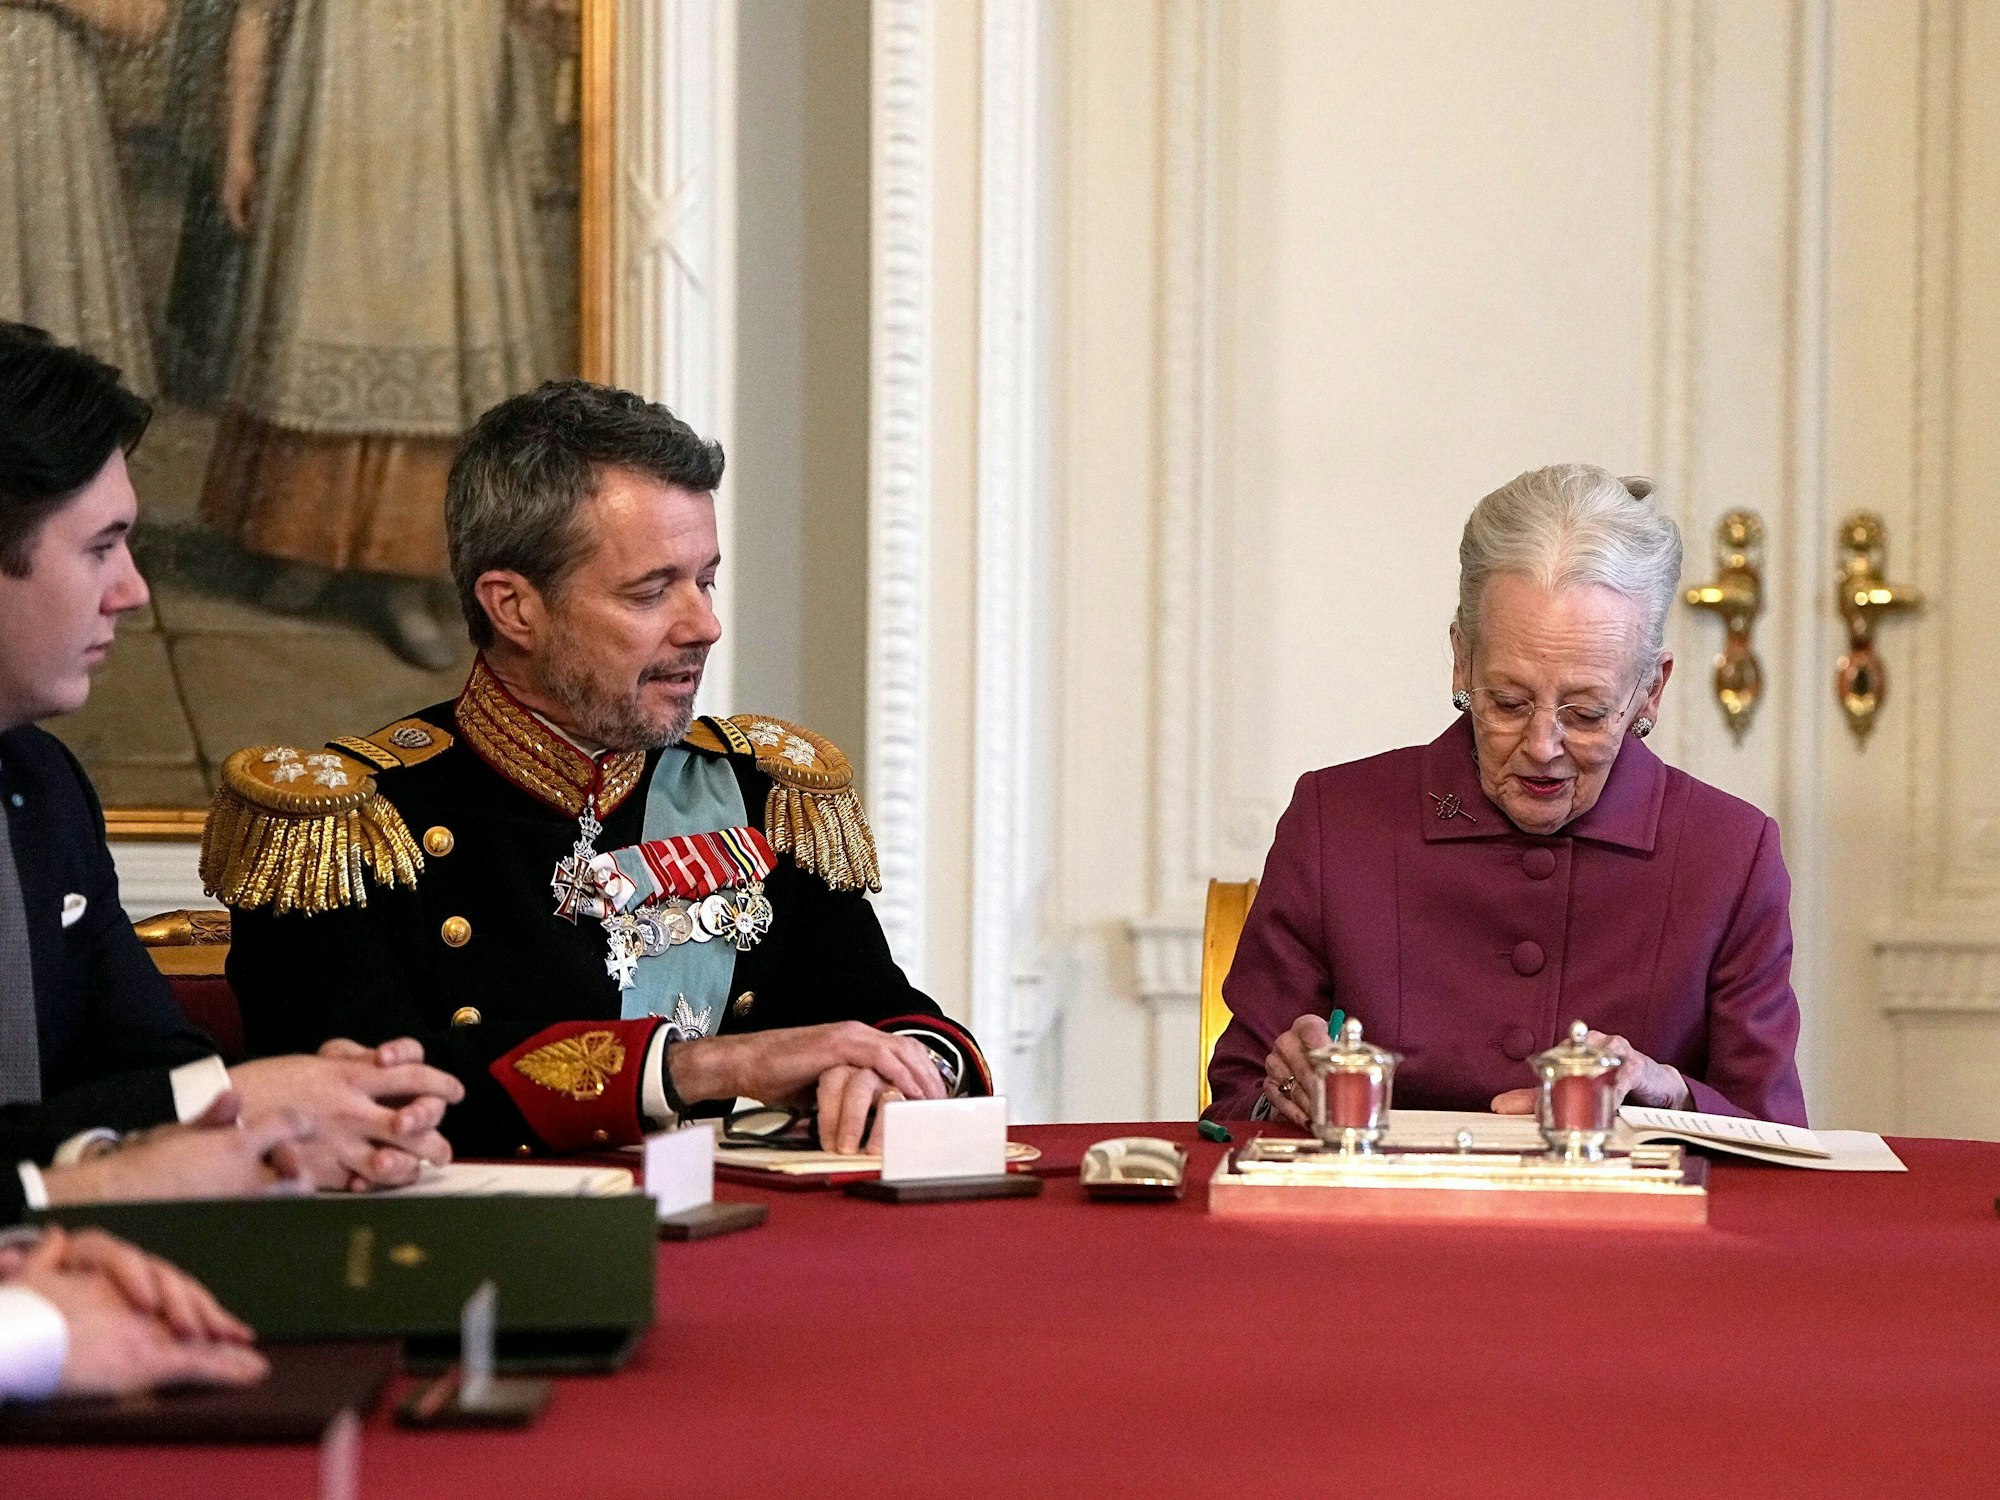 Königin Margrethe II. von Dänemark unterzeichnet im Staatsrat von Schloss Christiansborg die Abdankungserklärung. Neben ihr sitzen der neue König Frederik X. und der neue Kronprinz Christian.